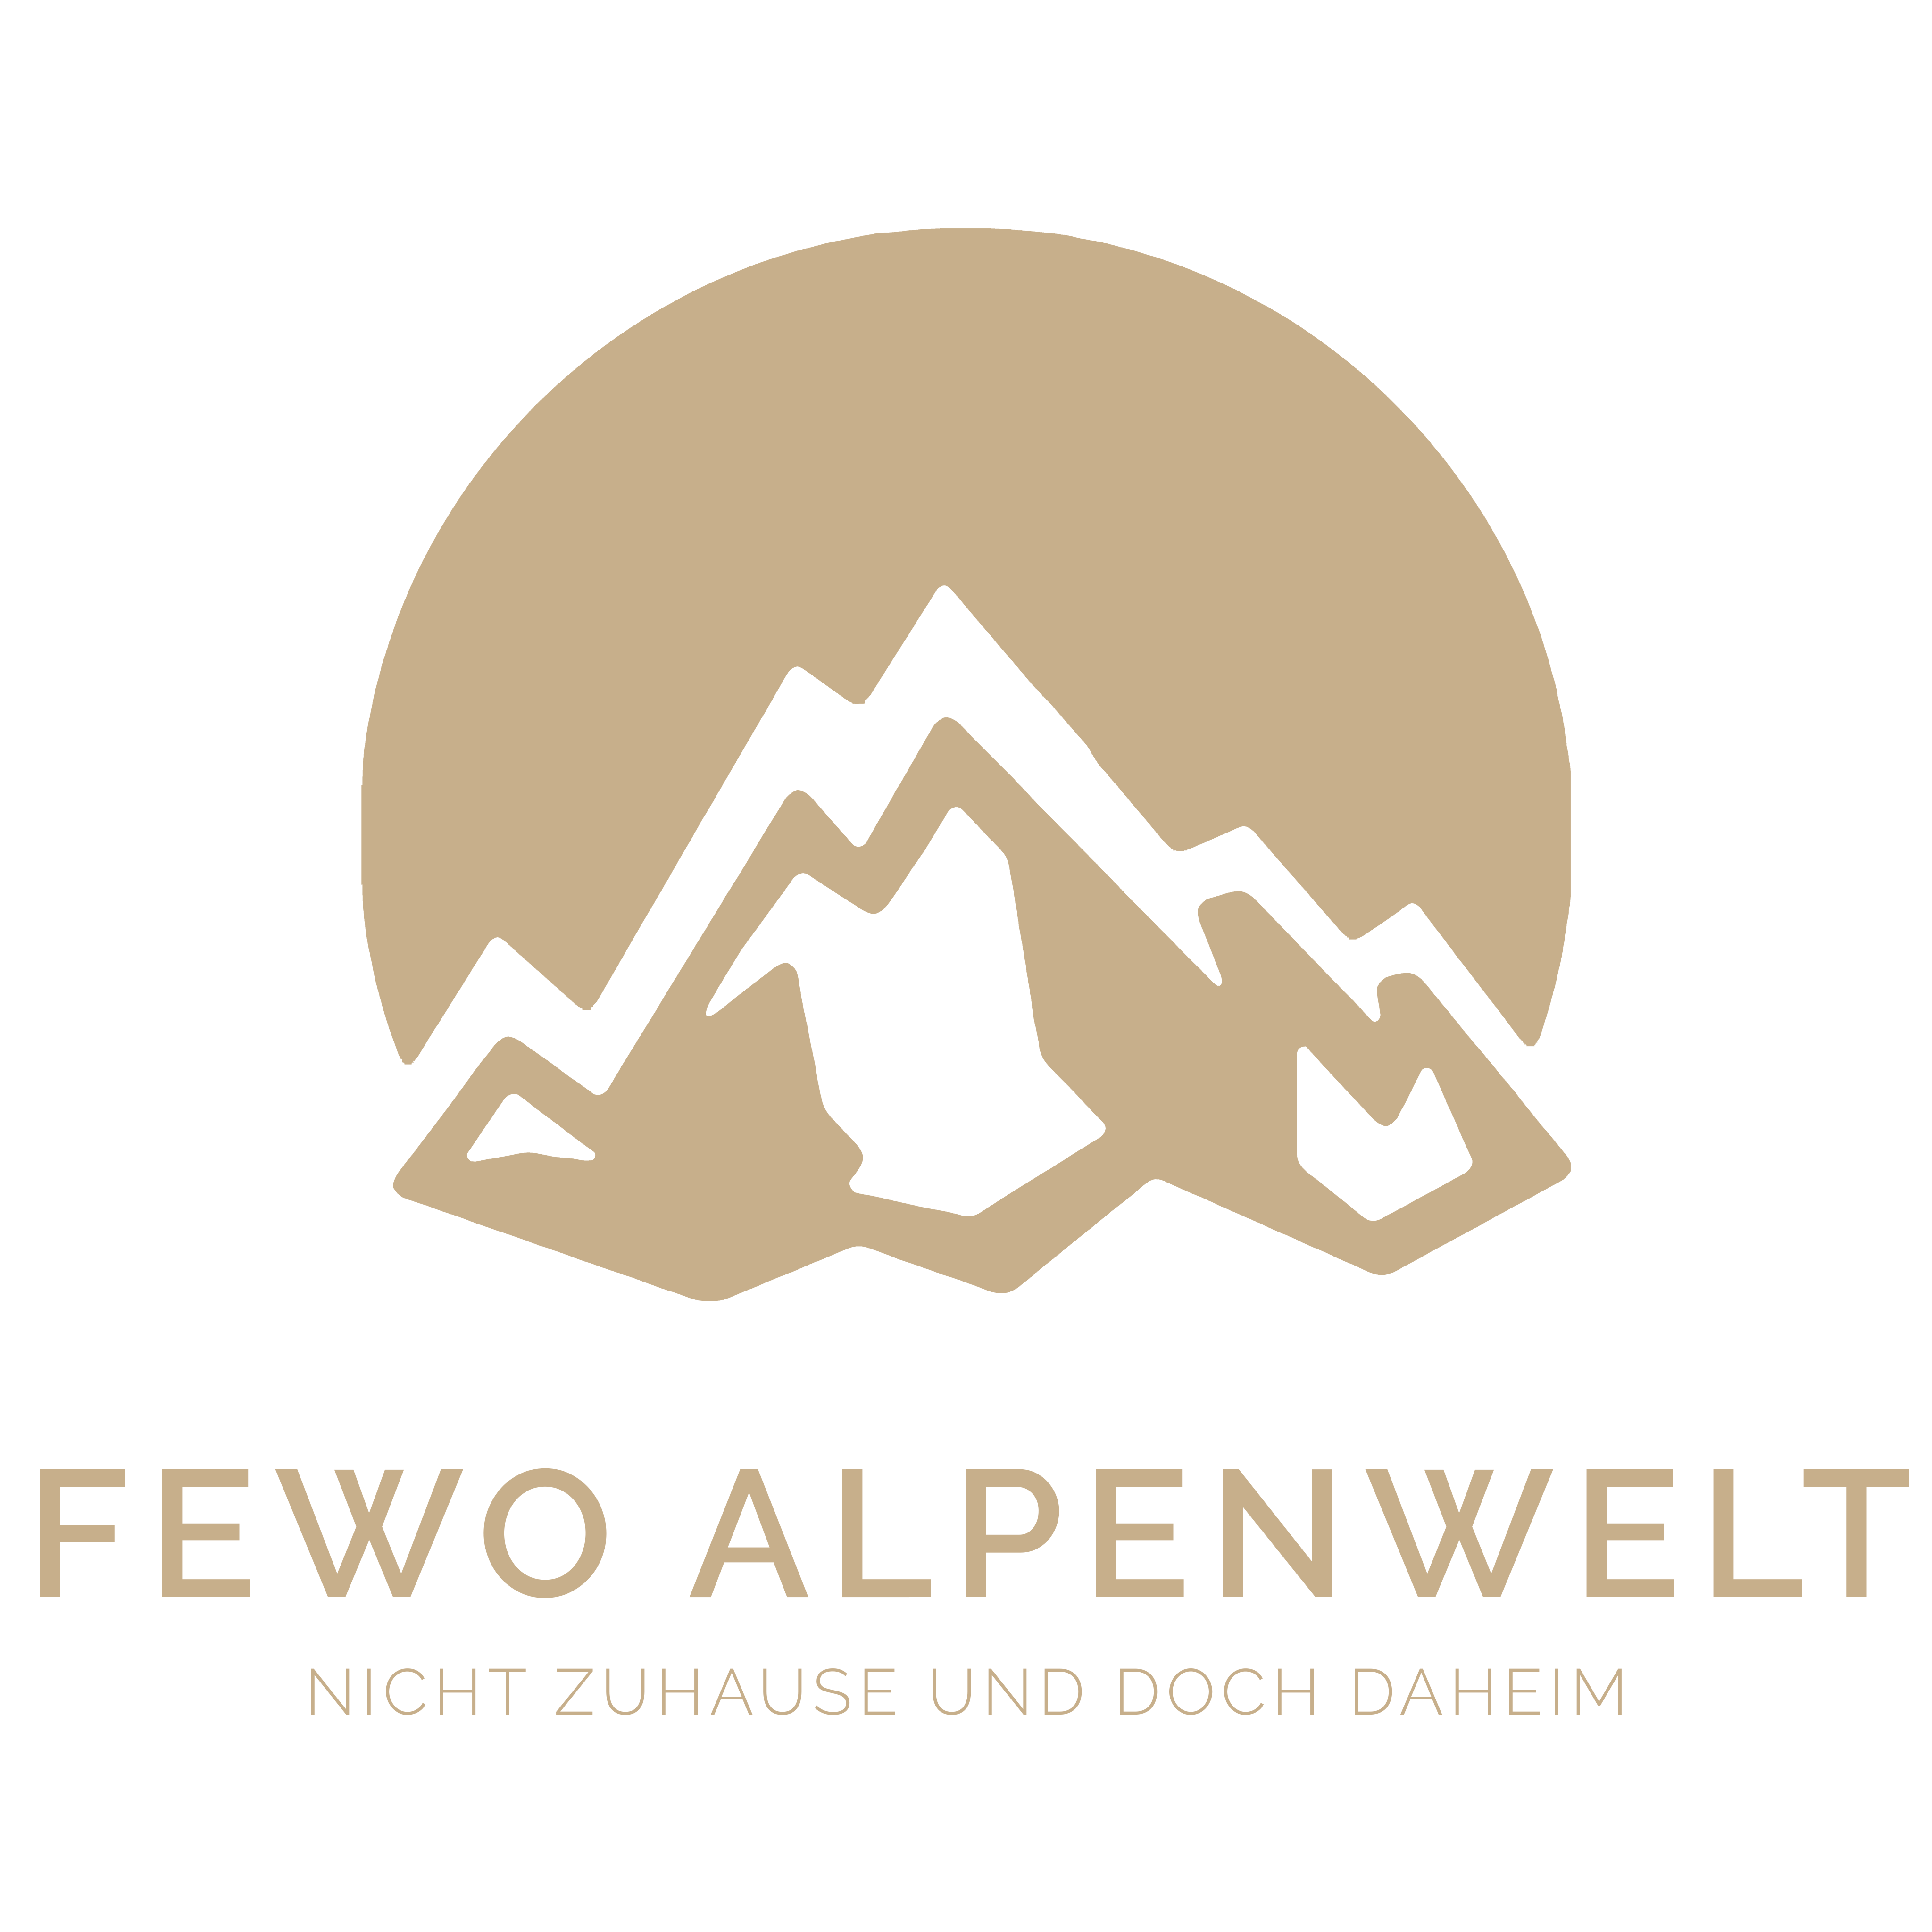 Fewo Alpenwelt - Nicht Zuhause und doch daheim